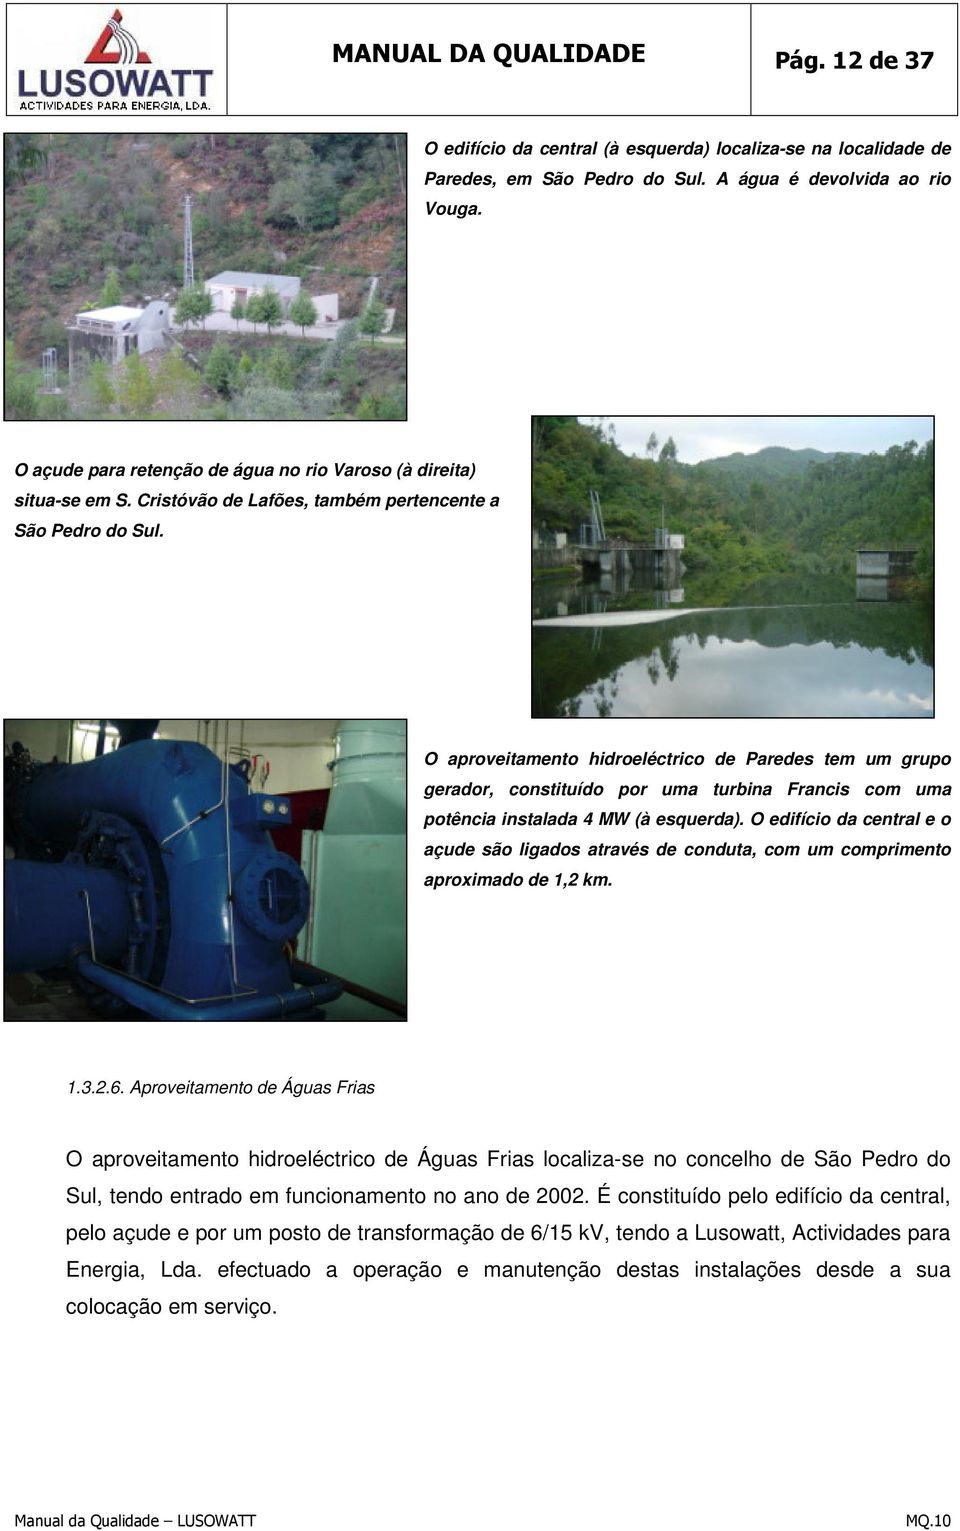 O aproveitamento hidroeléctrico de Paredes tem um grupo gerador, constituído por uma turbina Francis com uma potência instalada 4 MW (à esquerda).